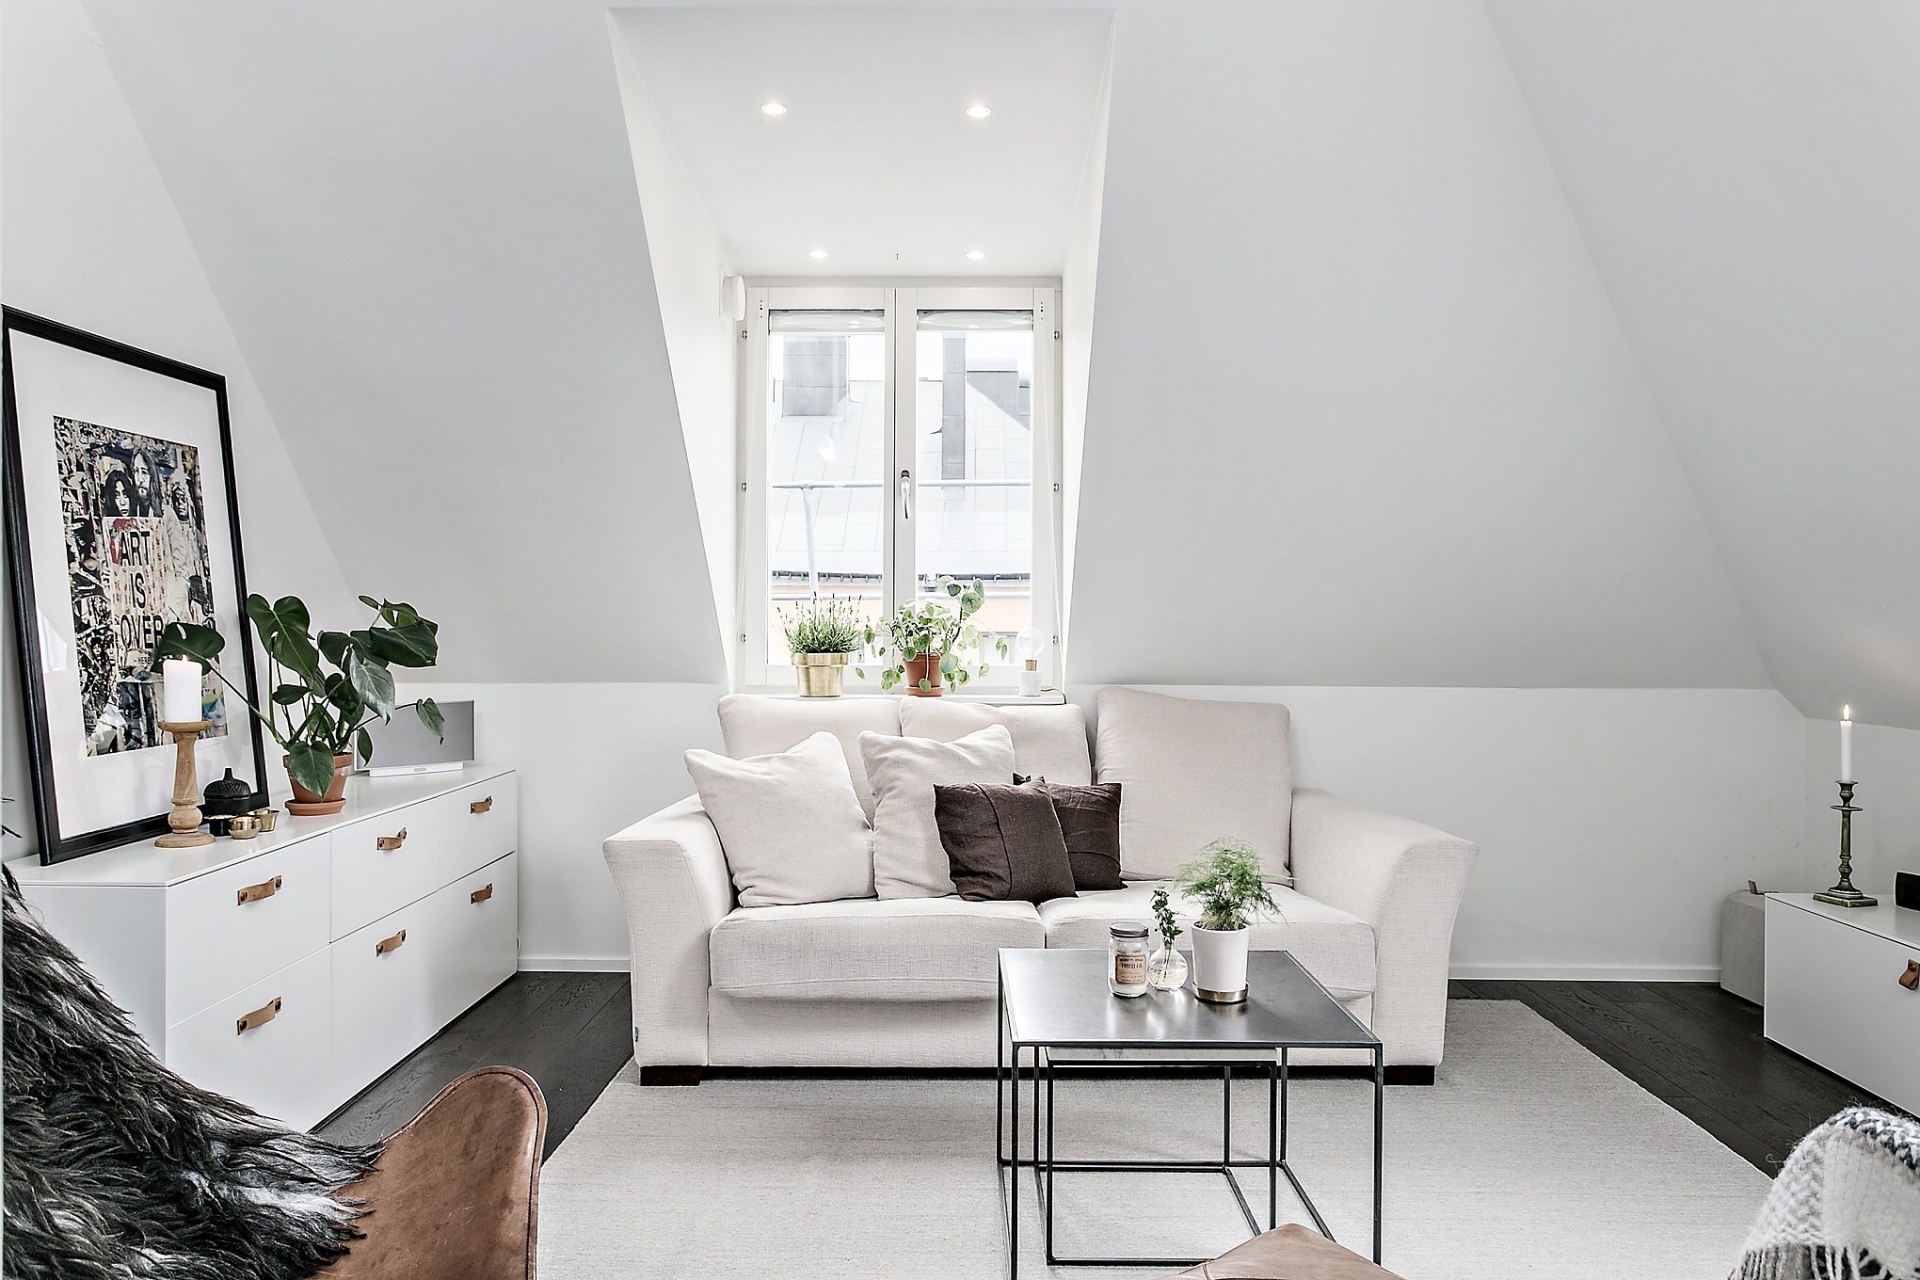 Phòng khách sử dụng ghế sofa, tủ lưu trữ và cả thảm trải sàn đều màu trắng 'tone sur tone' nền tương và tạo sự tương phản nhẹ nhàng với sàn gỗ cùng bàn nước đen bóng.